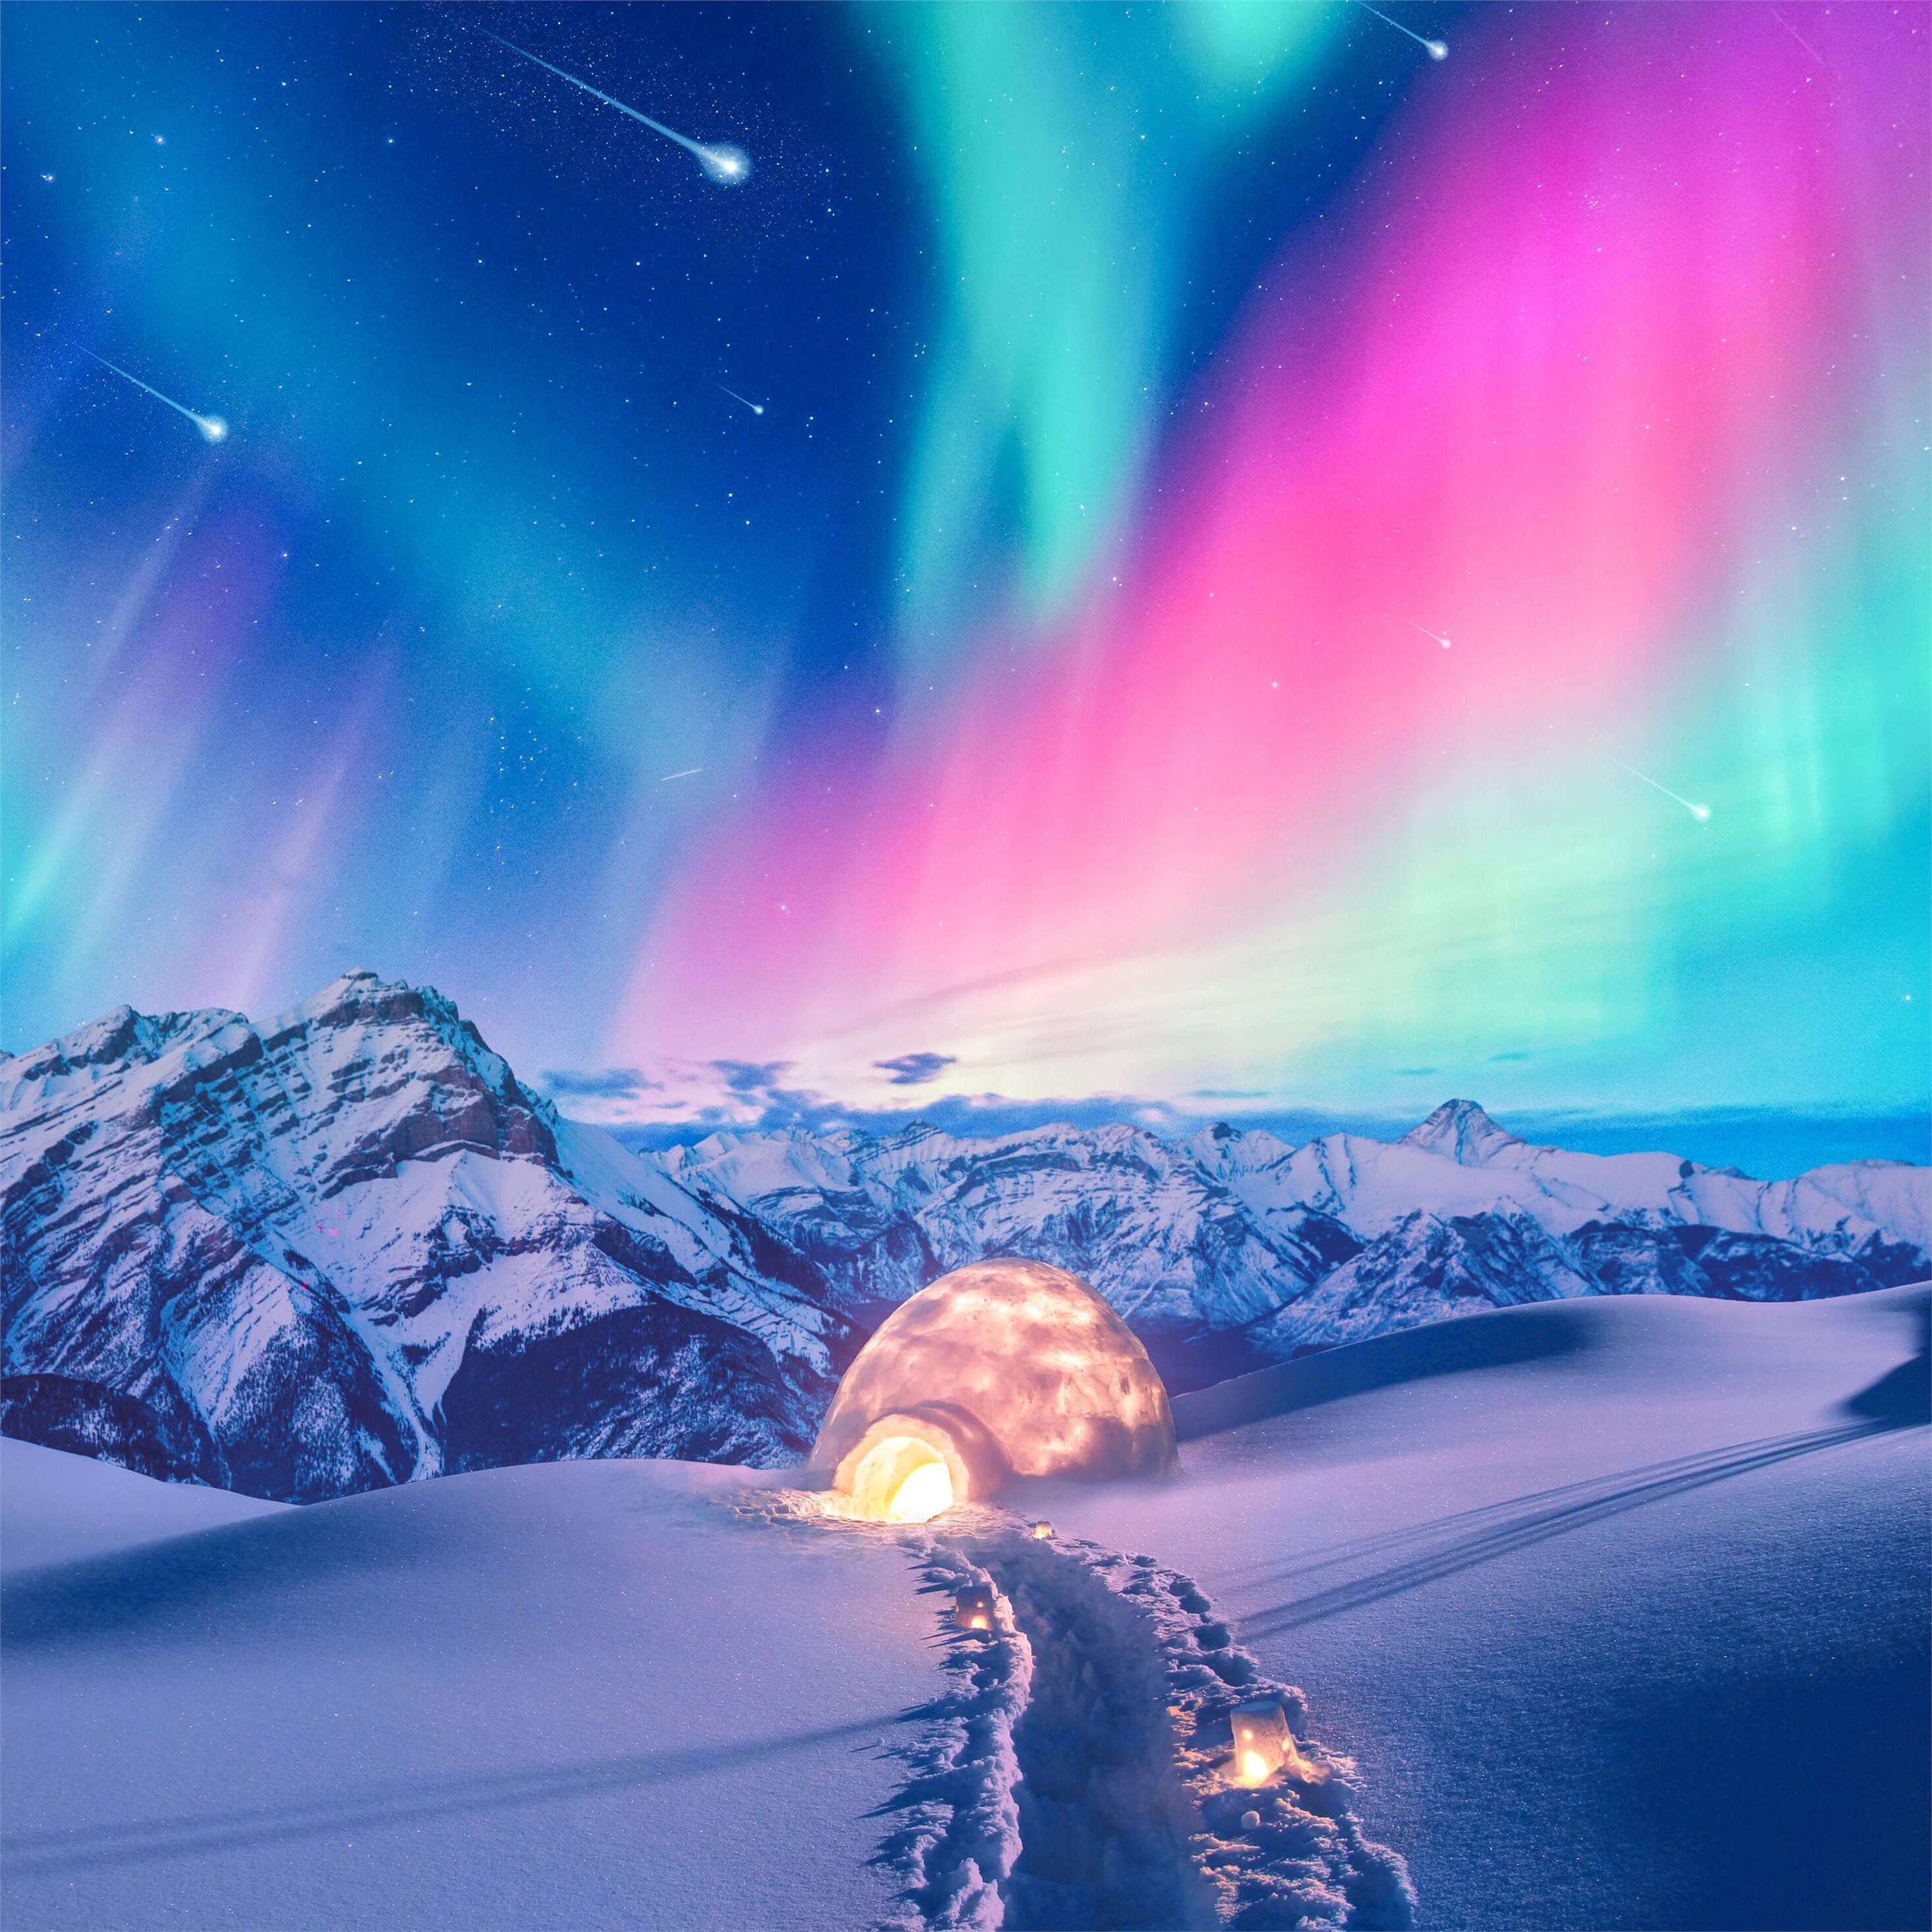 Ánh sáng bắc cực hay còn gọi là Aurora là một trong những hiện tượng thiên nhiên đẹp nhất trên thế giới. Hãy xem những hình nền iPad Pro về ánh sáng bắc cực tuyệt đẹp trong mùa Đông tại Iceland. Trải nghiệm sự tuyệt vời của thiên nhiên tại vùng đất nước này qua màn hình iPad Pro của bạn.